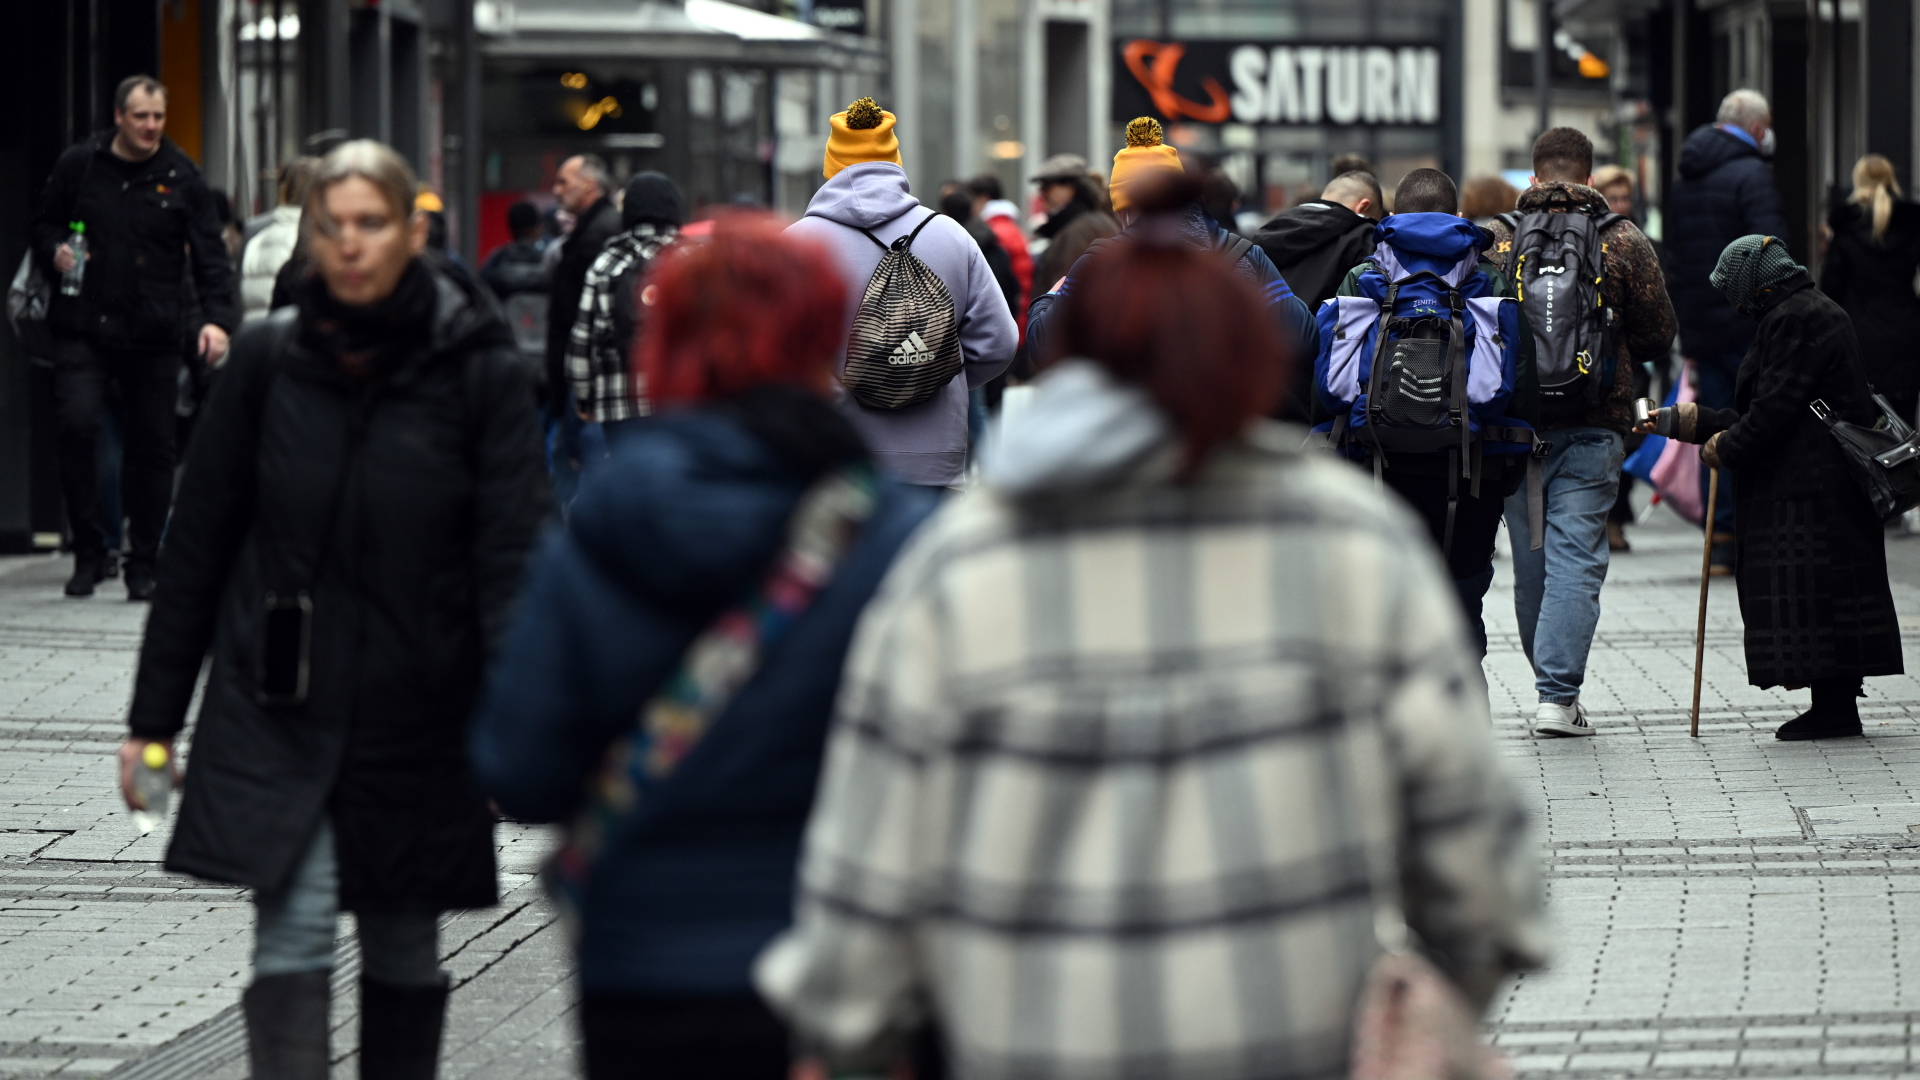  Zahlreiche Menschen gehen durch eine Einkaufsstraße in Köln. | dpa